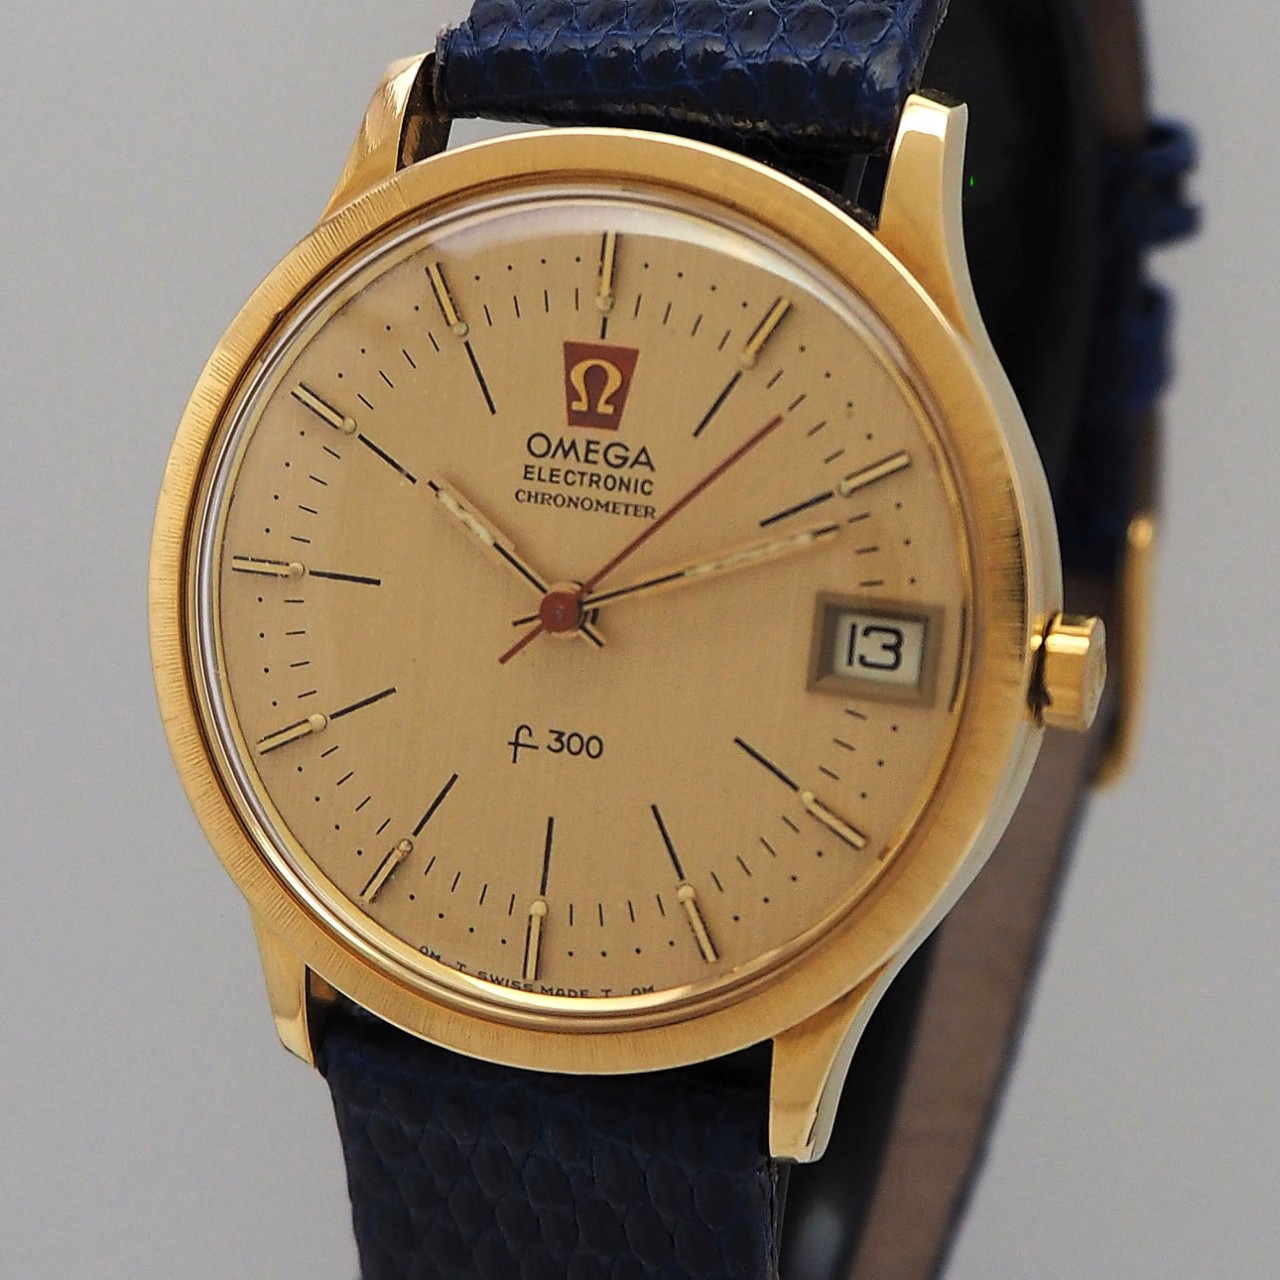 Omega Chronometer f300, Gold 18k/750